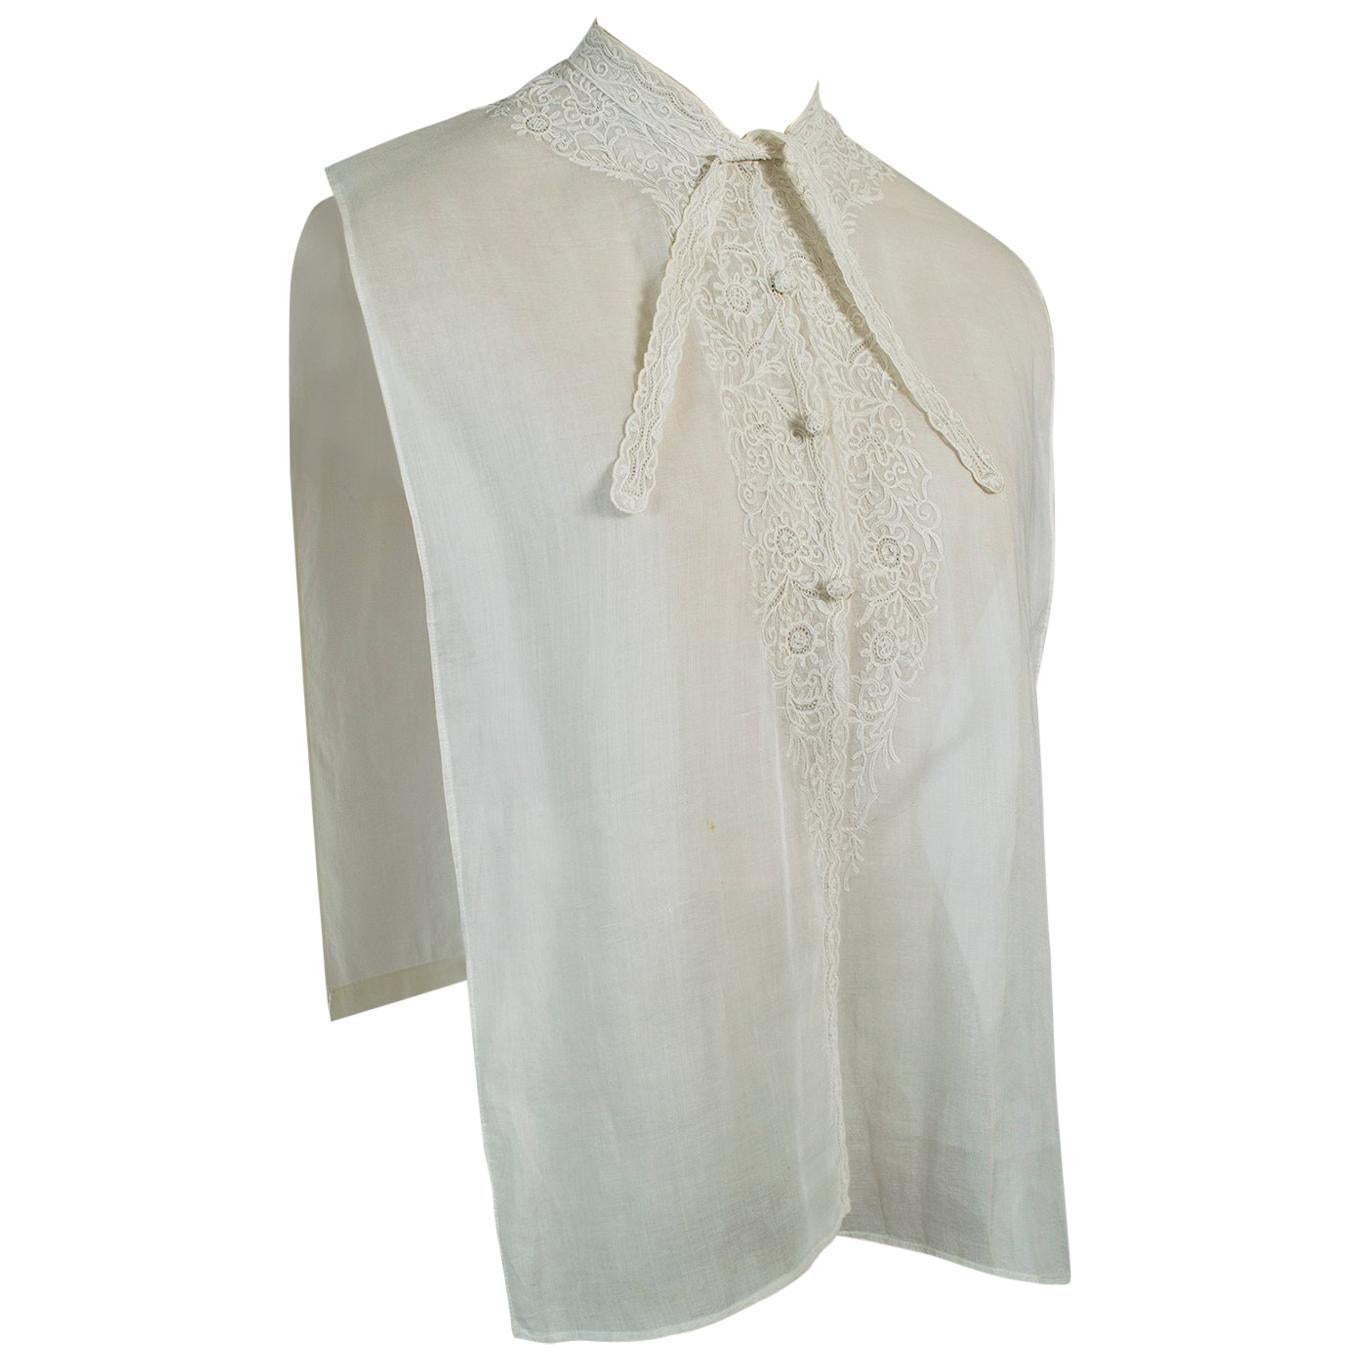 Camisa eduardiana con cuello de crewel en color crudo, Dickey-S-M, década de 1910